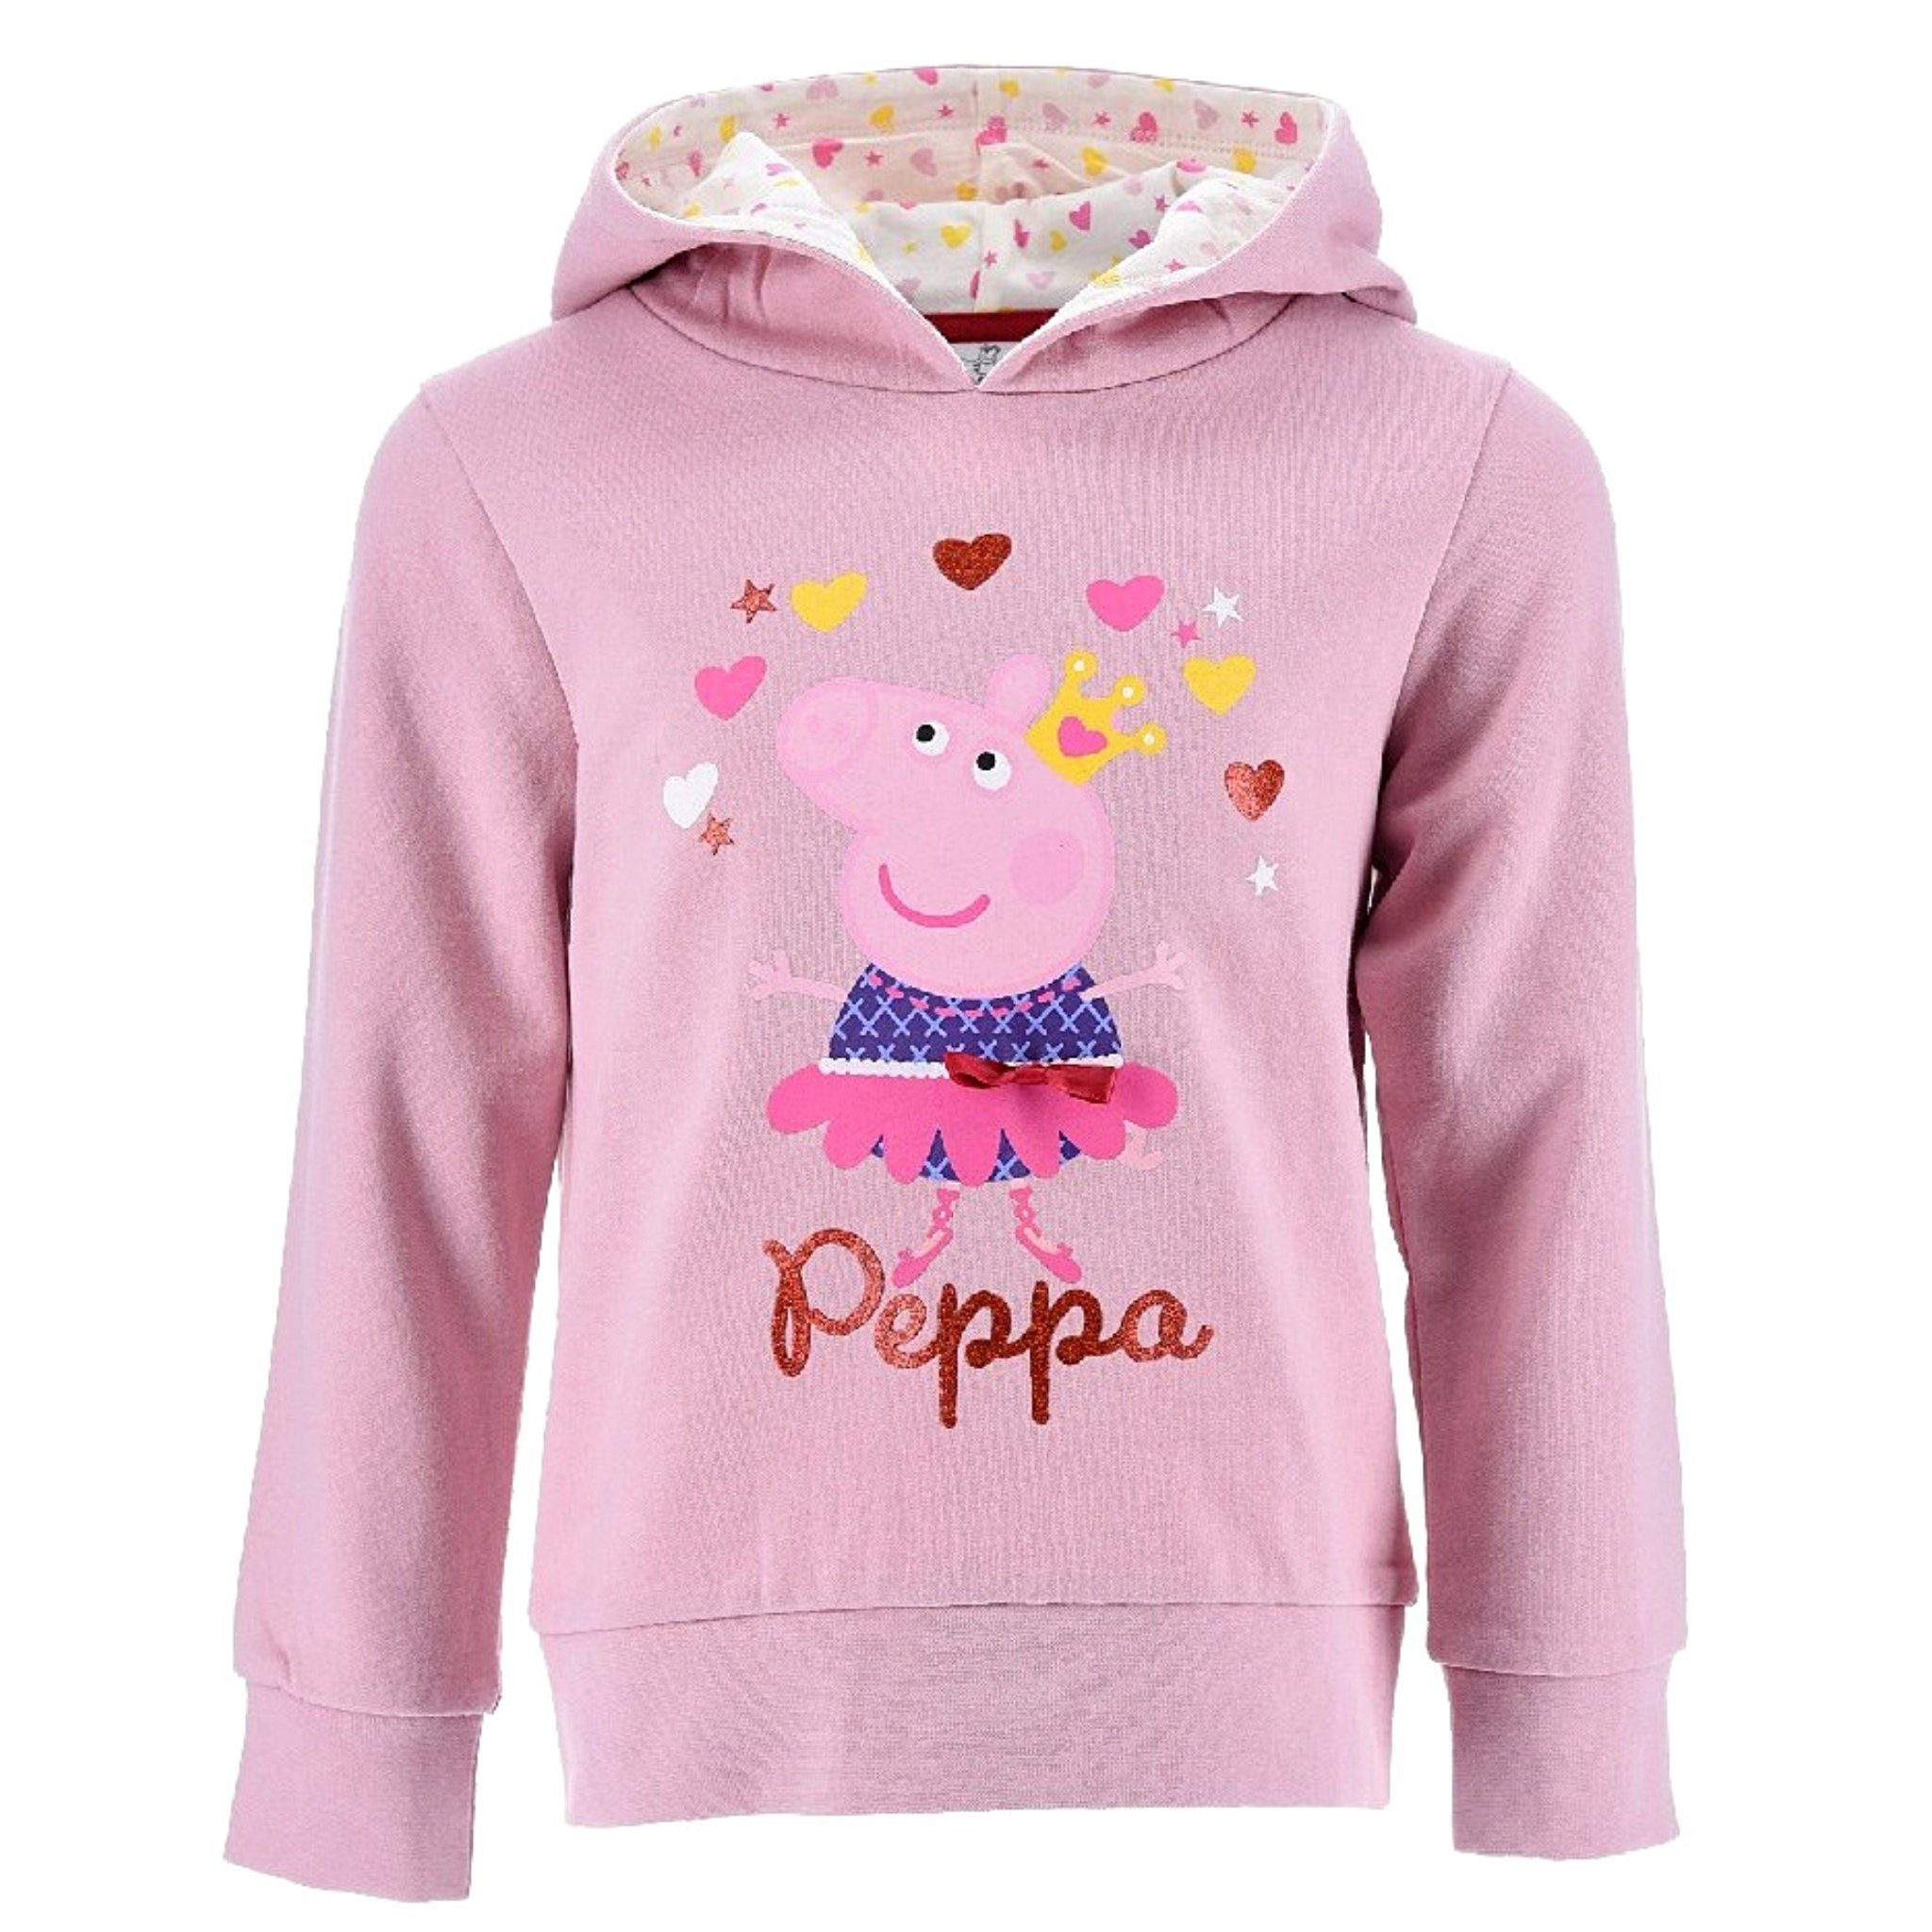 Peppa Pig Hoodie Peppa Wutz Hoodie Kinder Mädchen Kapuzenpullover Sweatshirt  Gr. 98-116 cm